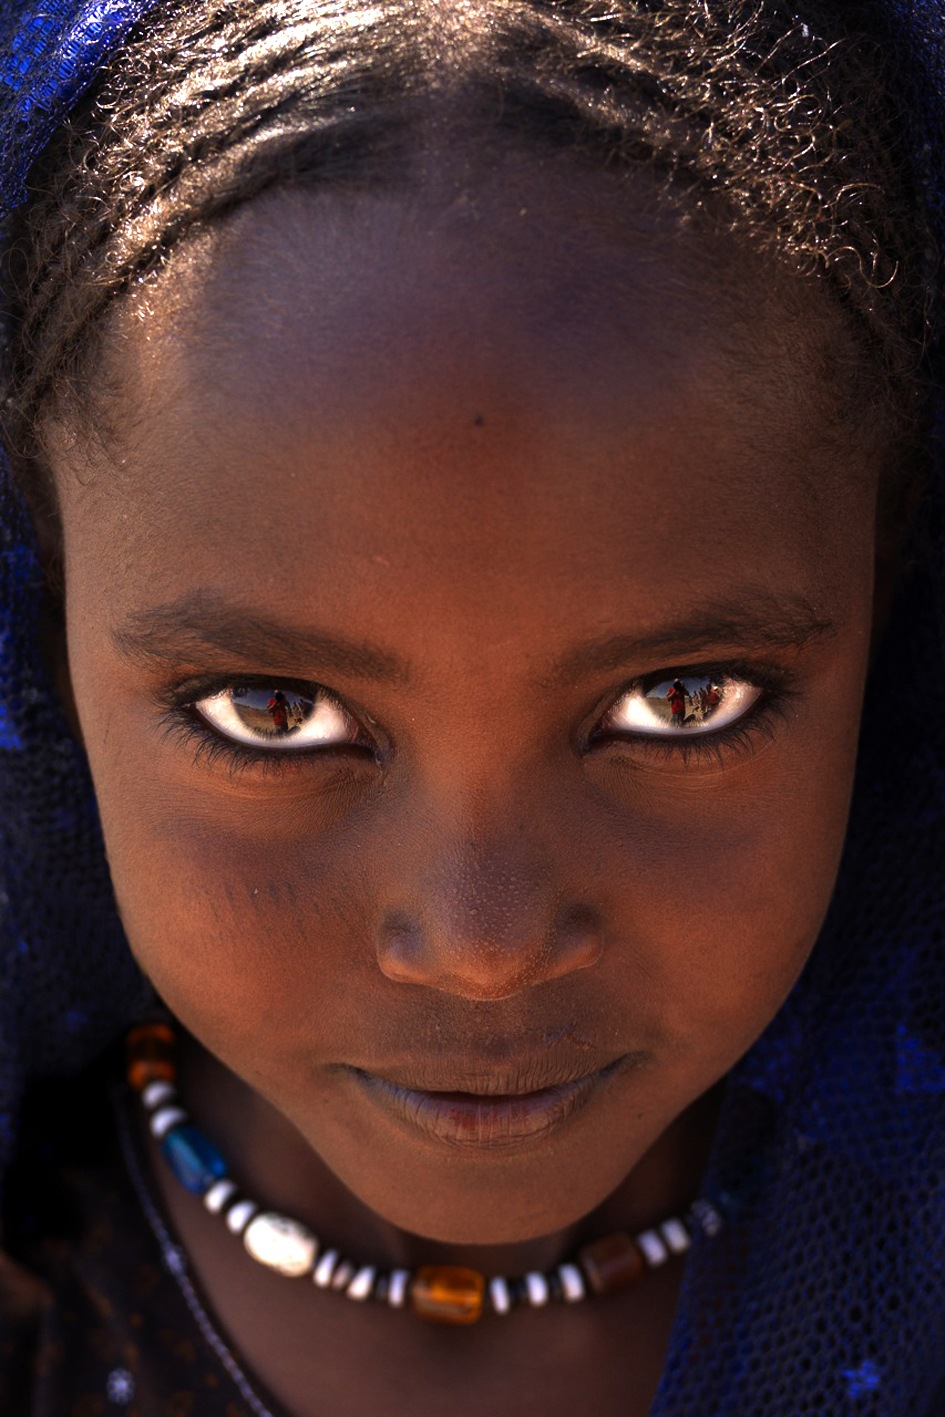 Бесплатные фото негритянок. Катрин Грозная. Африканка с голубыми глазами. Красивые африканки. Красивая Африканская девочка.